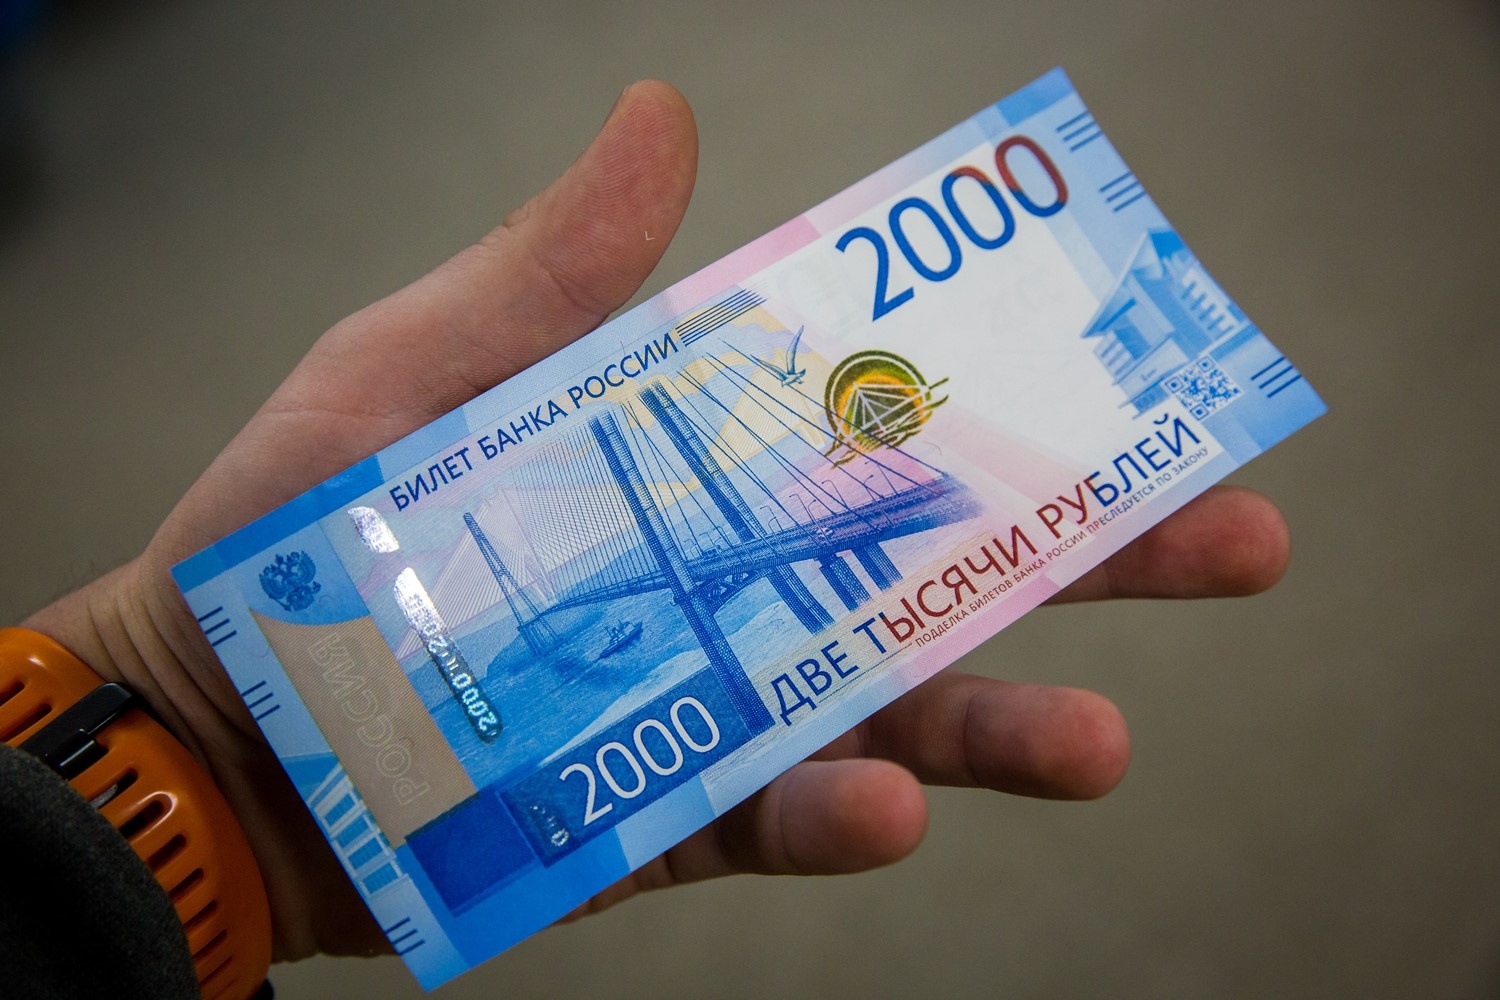 200 И 2000 рублей